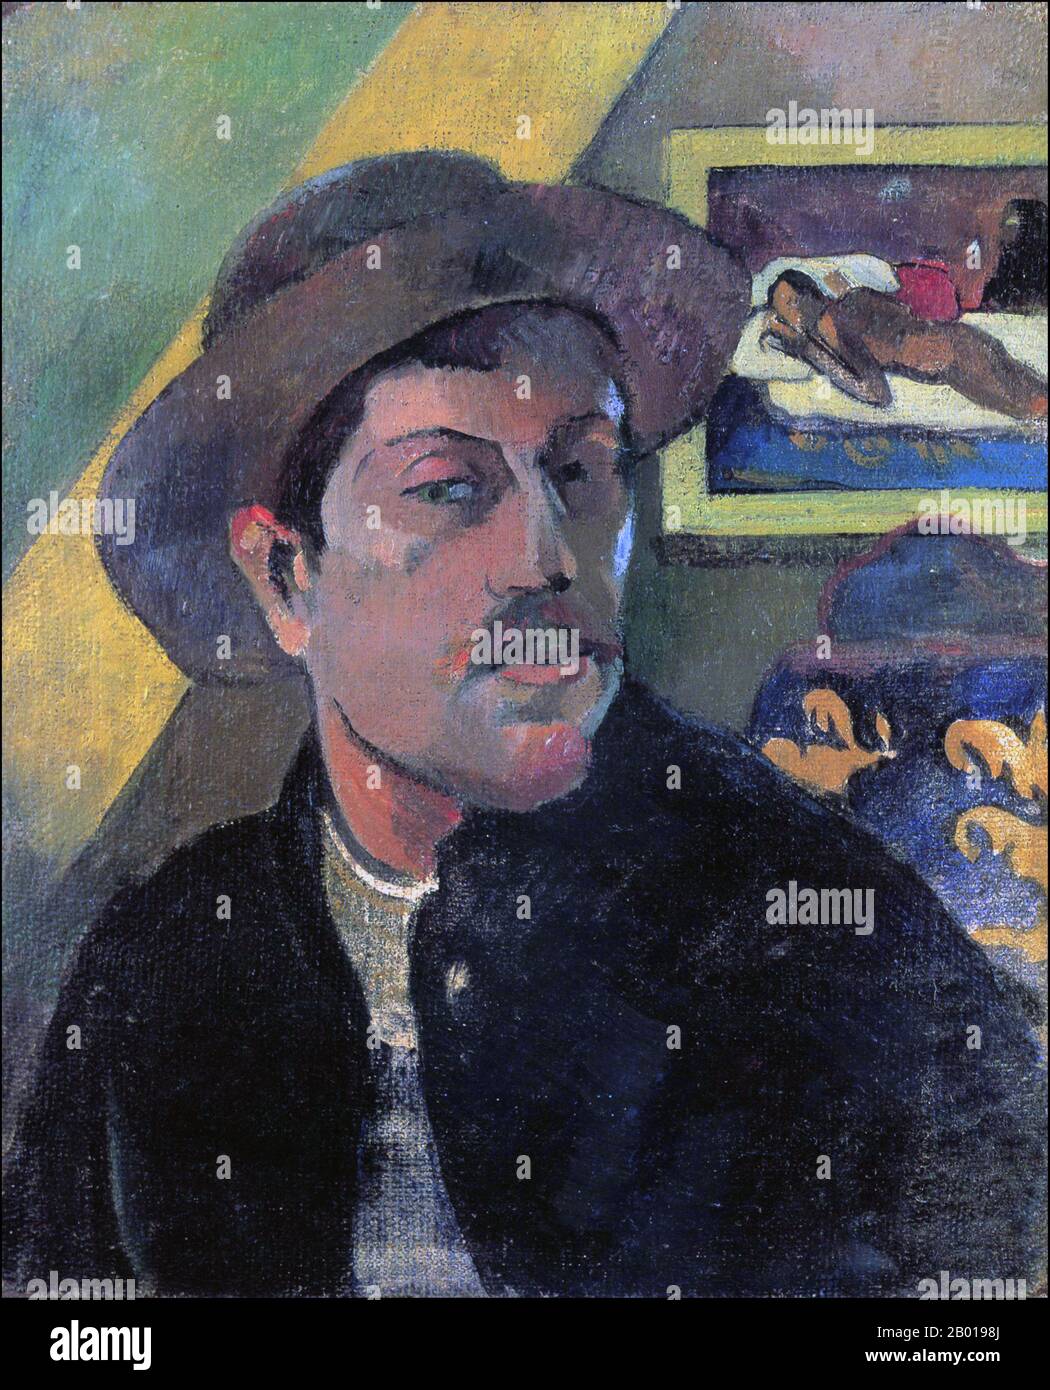 France/Tahiti : « Portrait de self dans un chapeau ». Peinture à l'huile sur toile par Paul Gauguin (7 juin 1848 - 8 mai 1903), 1893. Paul Gauguin est né à Paris en 1848 et a passé une partie de son enfance au Pérou. Il a travaillé comme courtier en Bourse avec peu de succès et a souffert de crises de dépression grave. Il a également peint. En 1891, Gauguin, frustré par le manque de reconnaissance à la maison et financièrement indigente, navigue vers les tropiques pour échapper à la civilisation européenne et "tout ce qui est artificiel et conventionnel". Son temps là-bas, en particulier à Tahiti et dans les îles Marquises, a suscité beaucoup d'intérêt. Banque D'Images